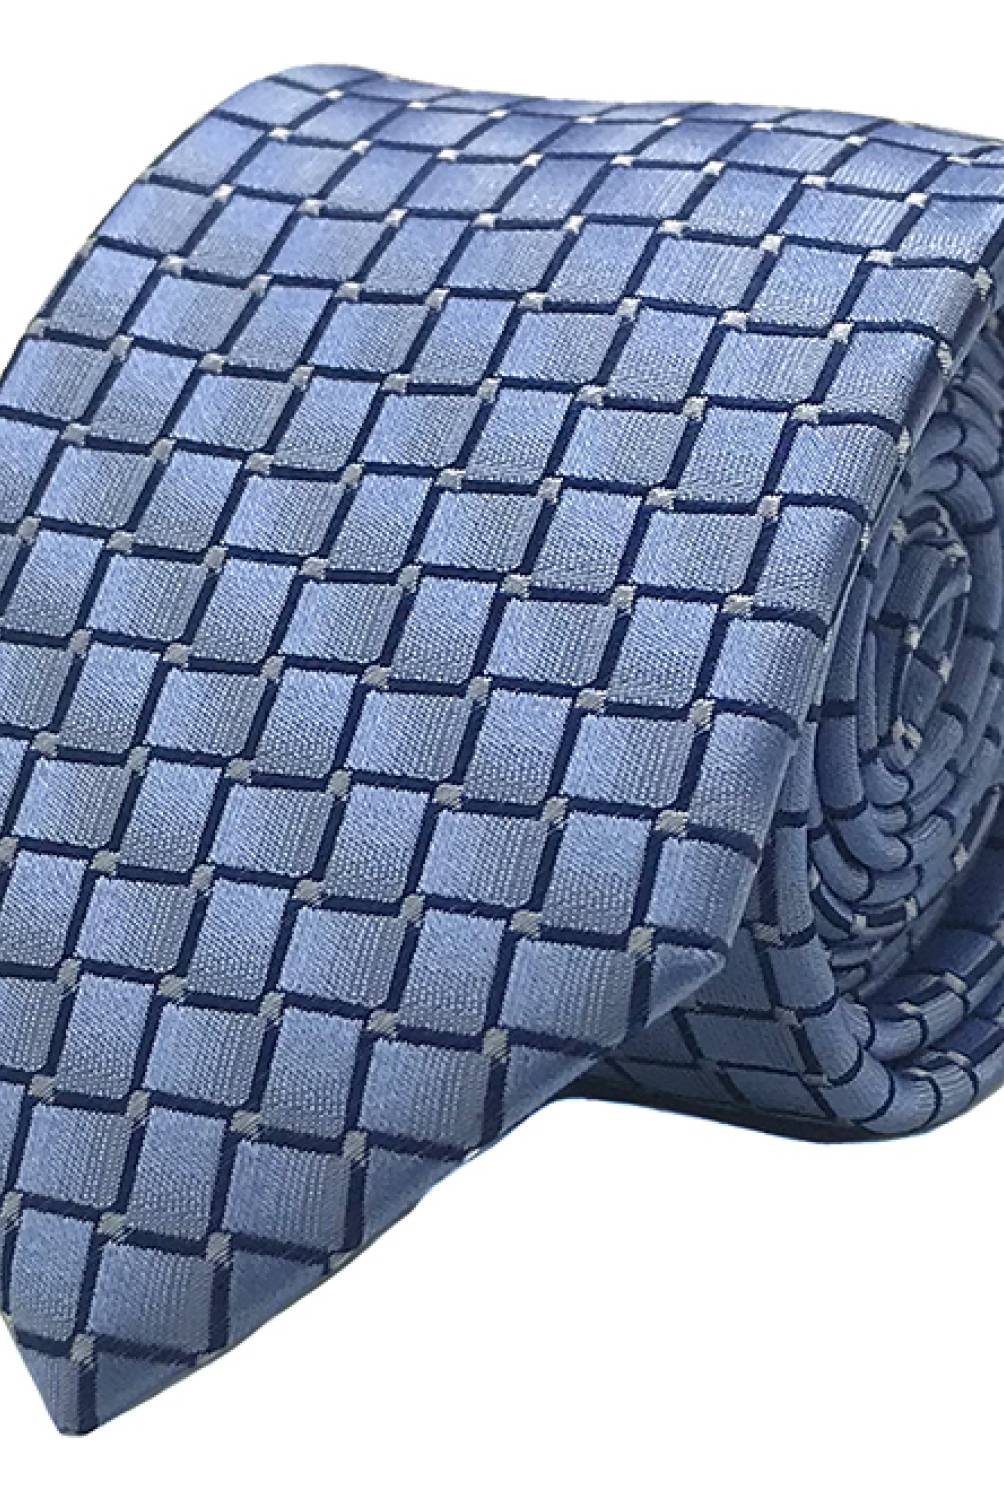 BASEMENT - Corbata Seda Celeste Cuadro Azul 7 Cm